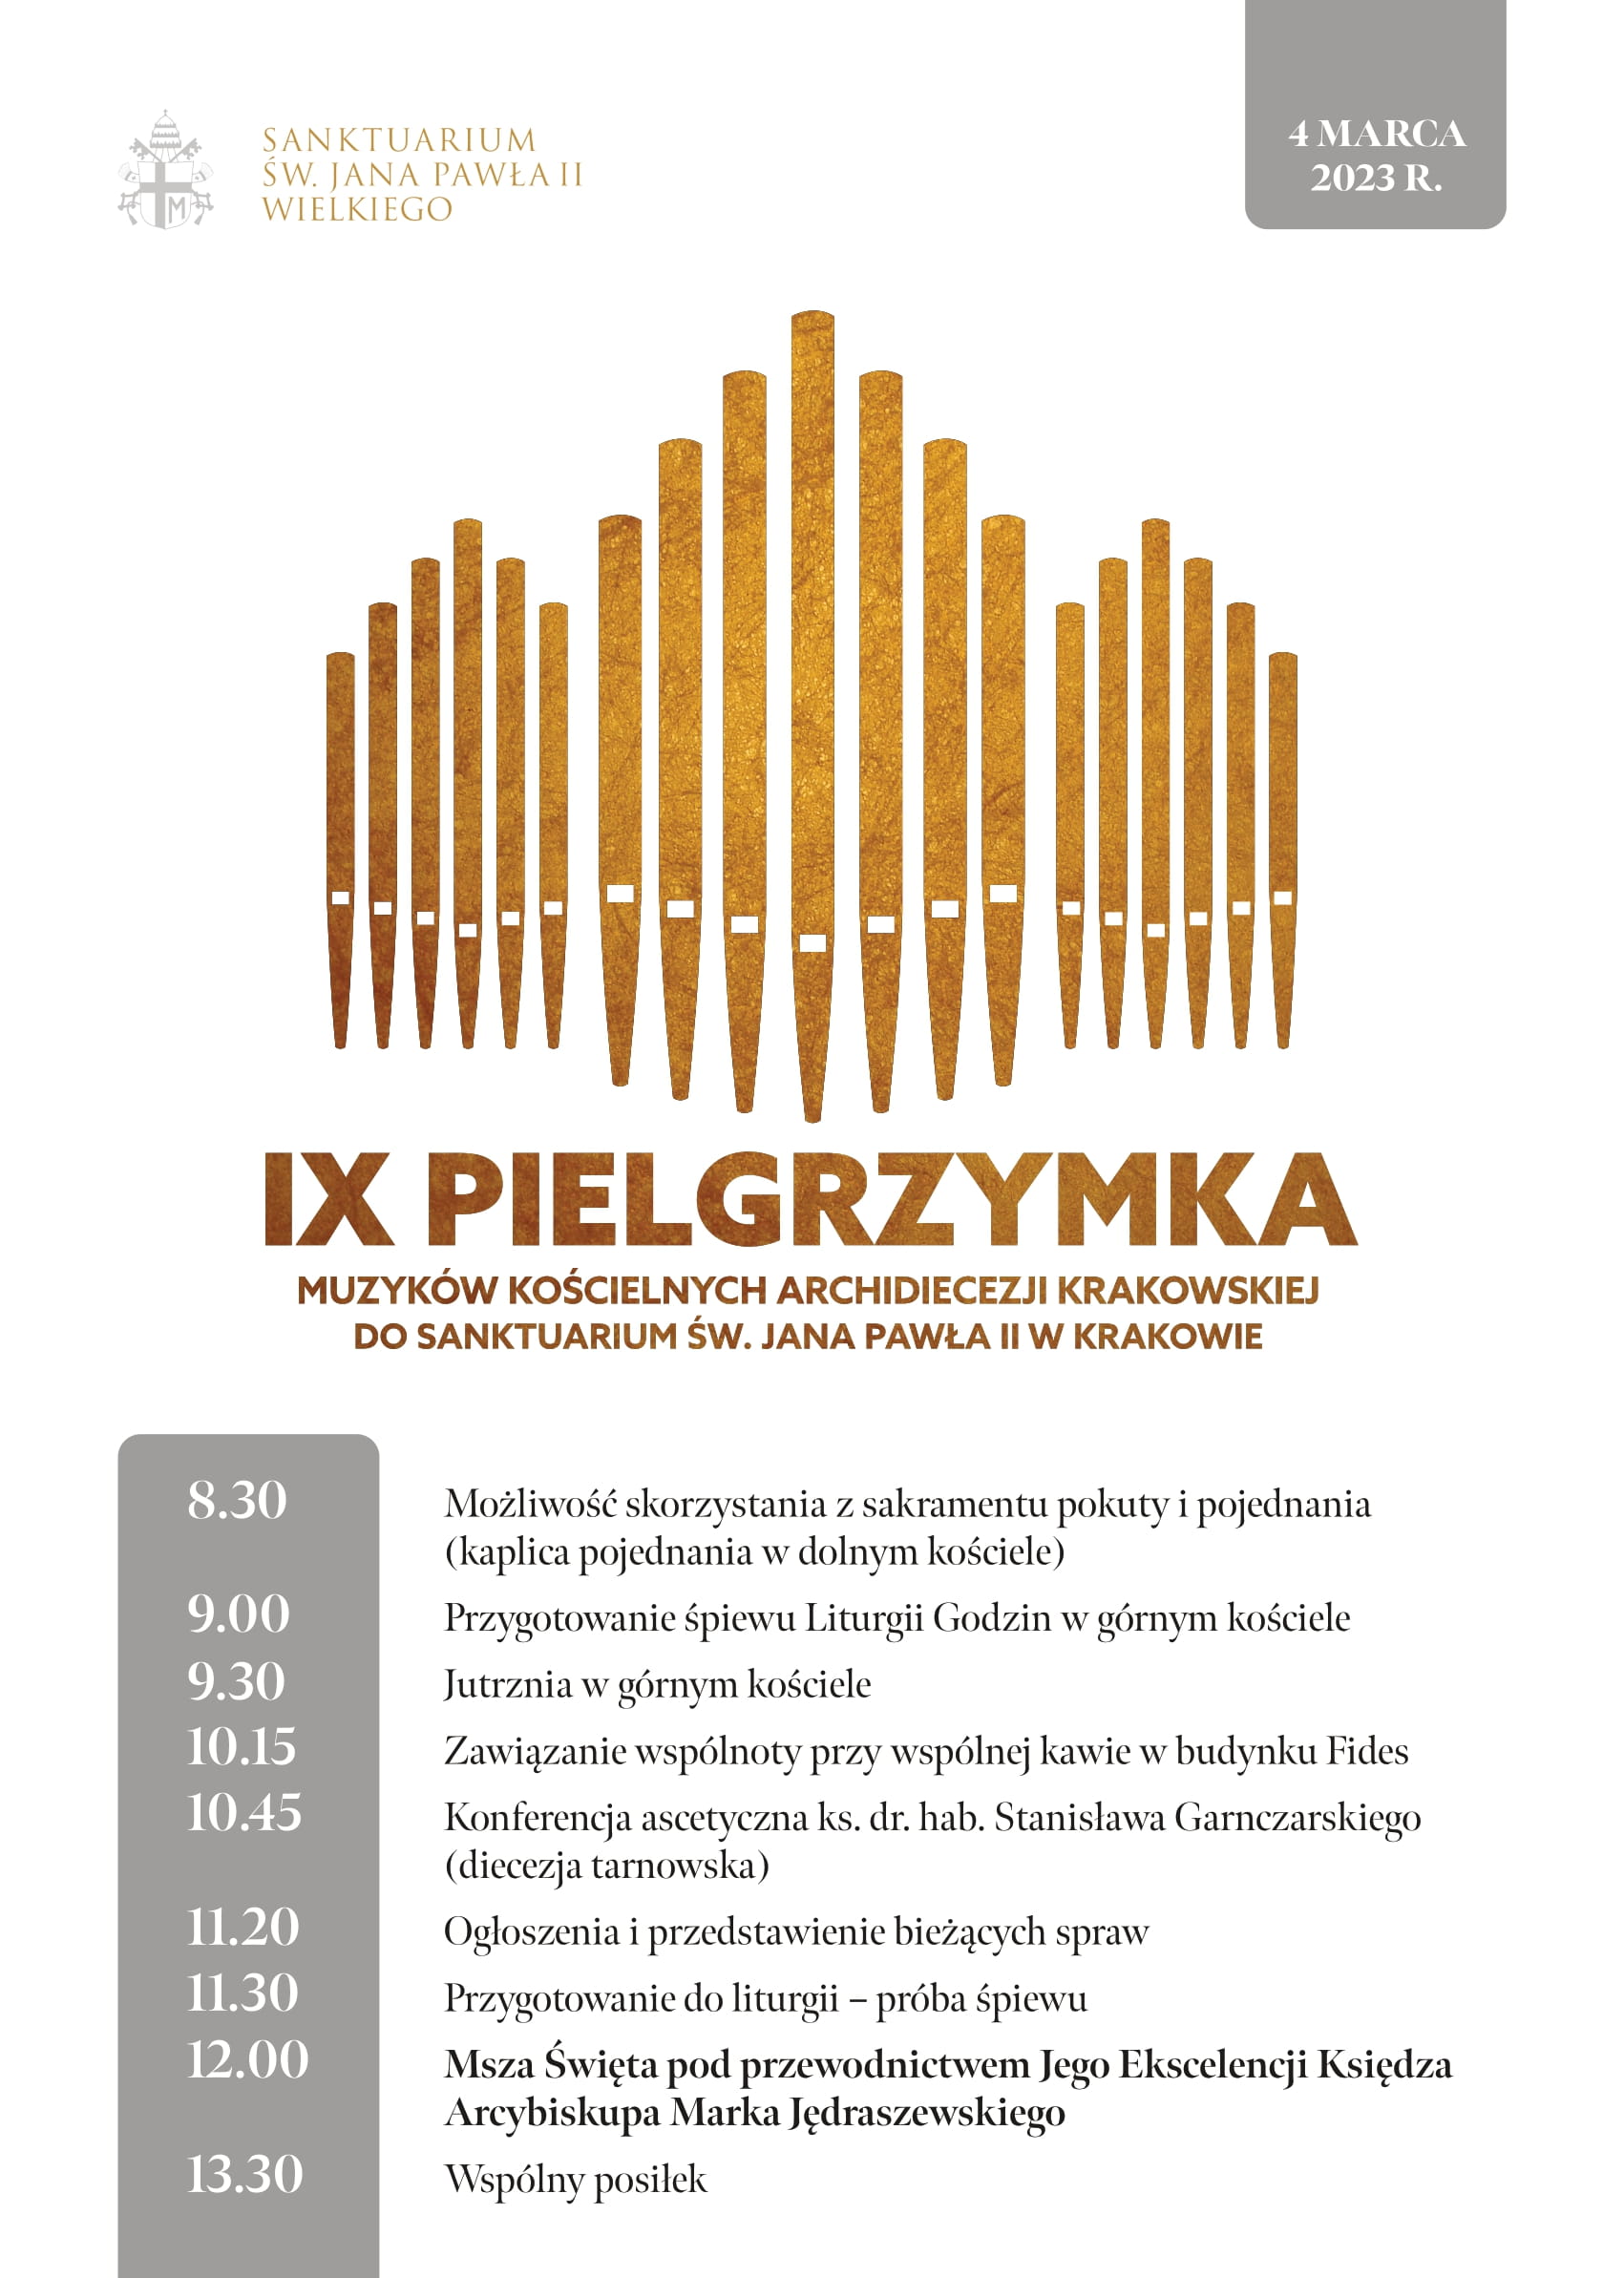 IX Pielgrzymka Muzyków Kościelnych Archidiecezji Krakowskiej do Sanktuarium św. Jana Pawła II w Krakowie